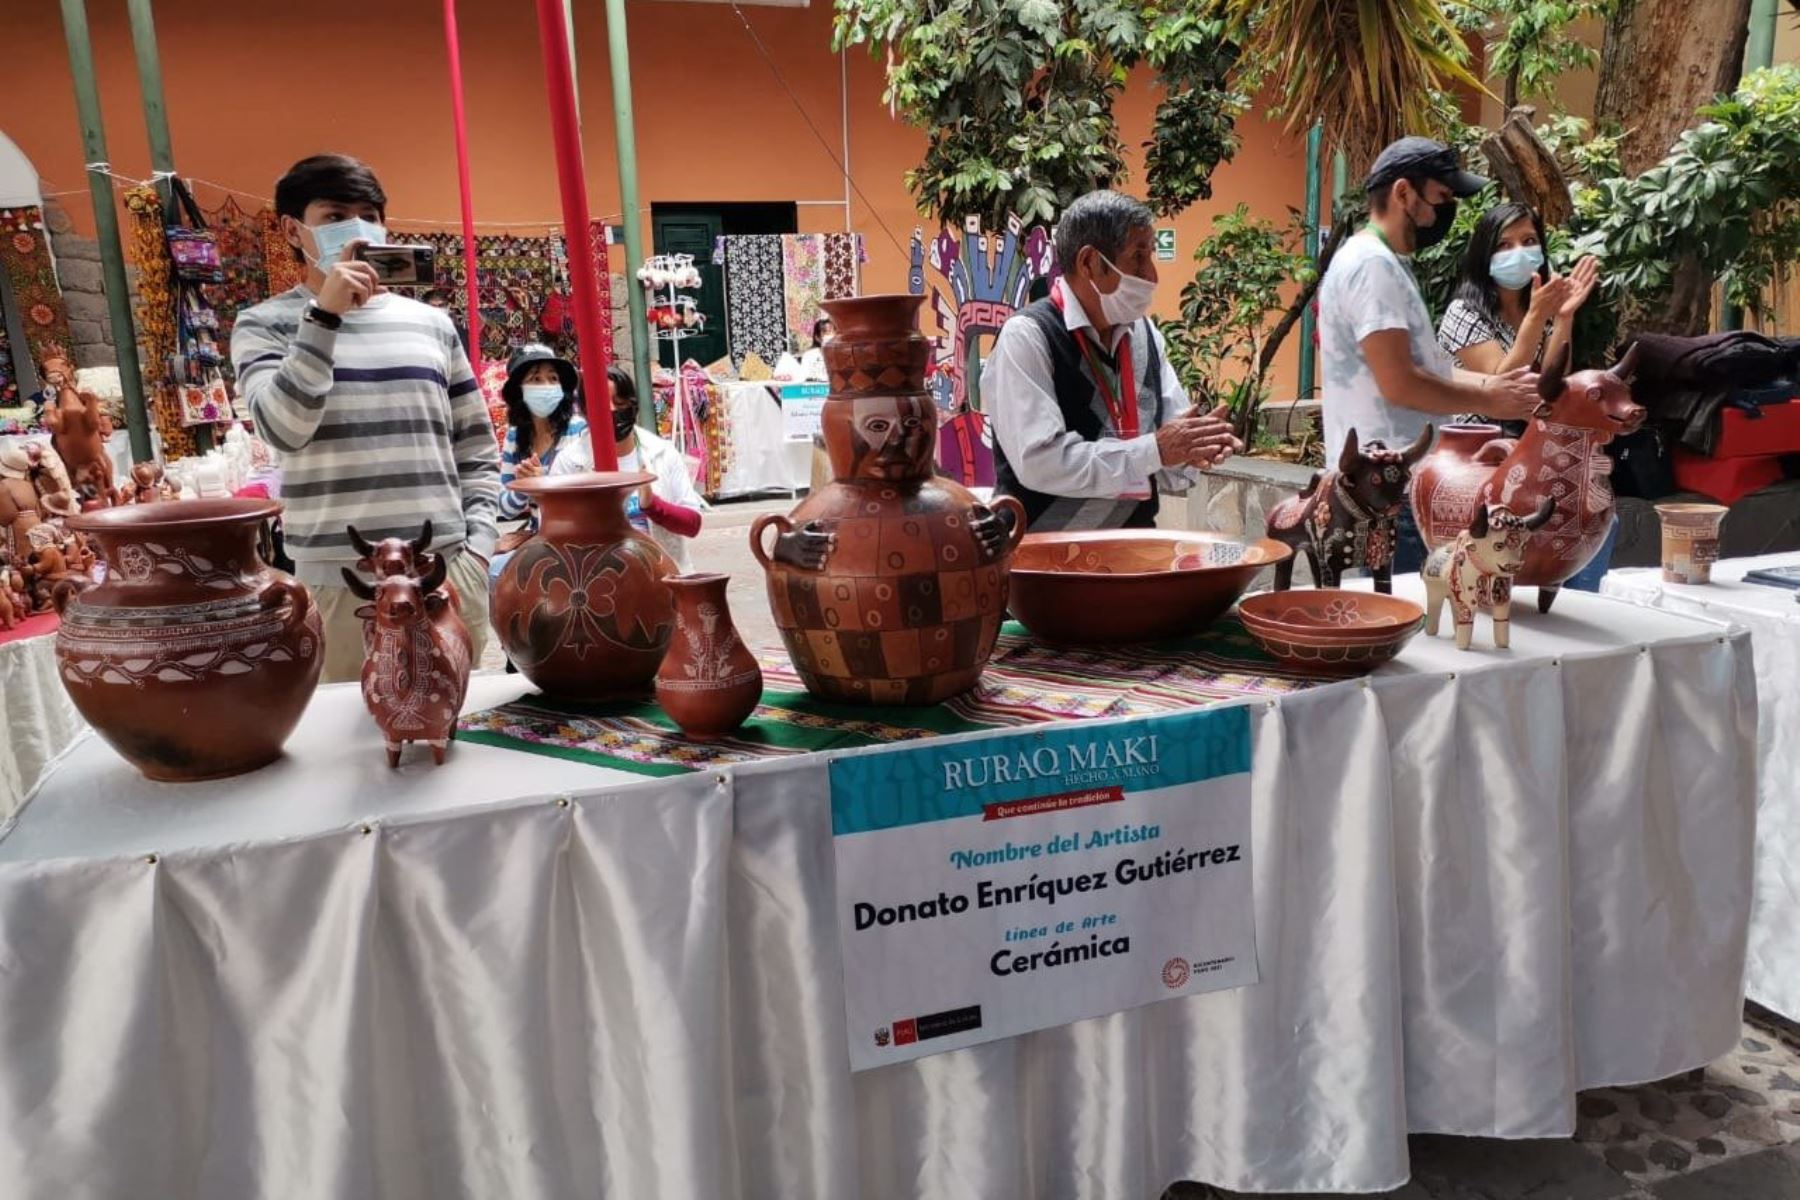 La jefa del Gabinete de Asesores, Ivone Montoya, en representación de la ministra de Cultura, inauguró la primera exposición venta Ruraq maki, hecho a mano que se realiza en la ciudad de Ayacucho.